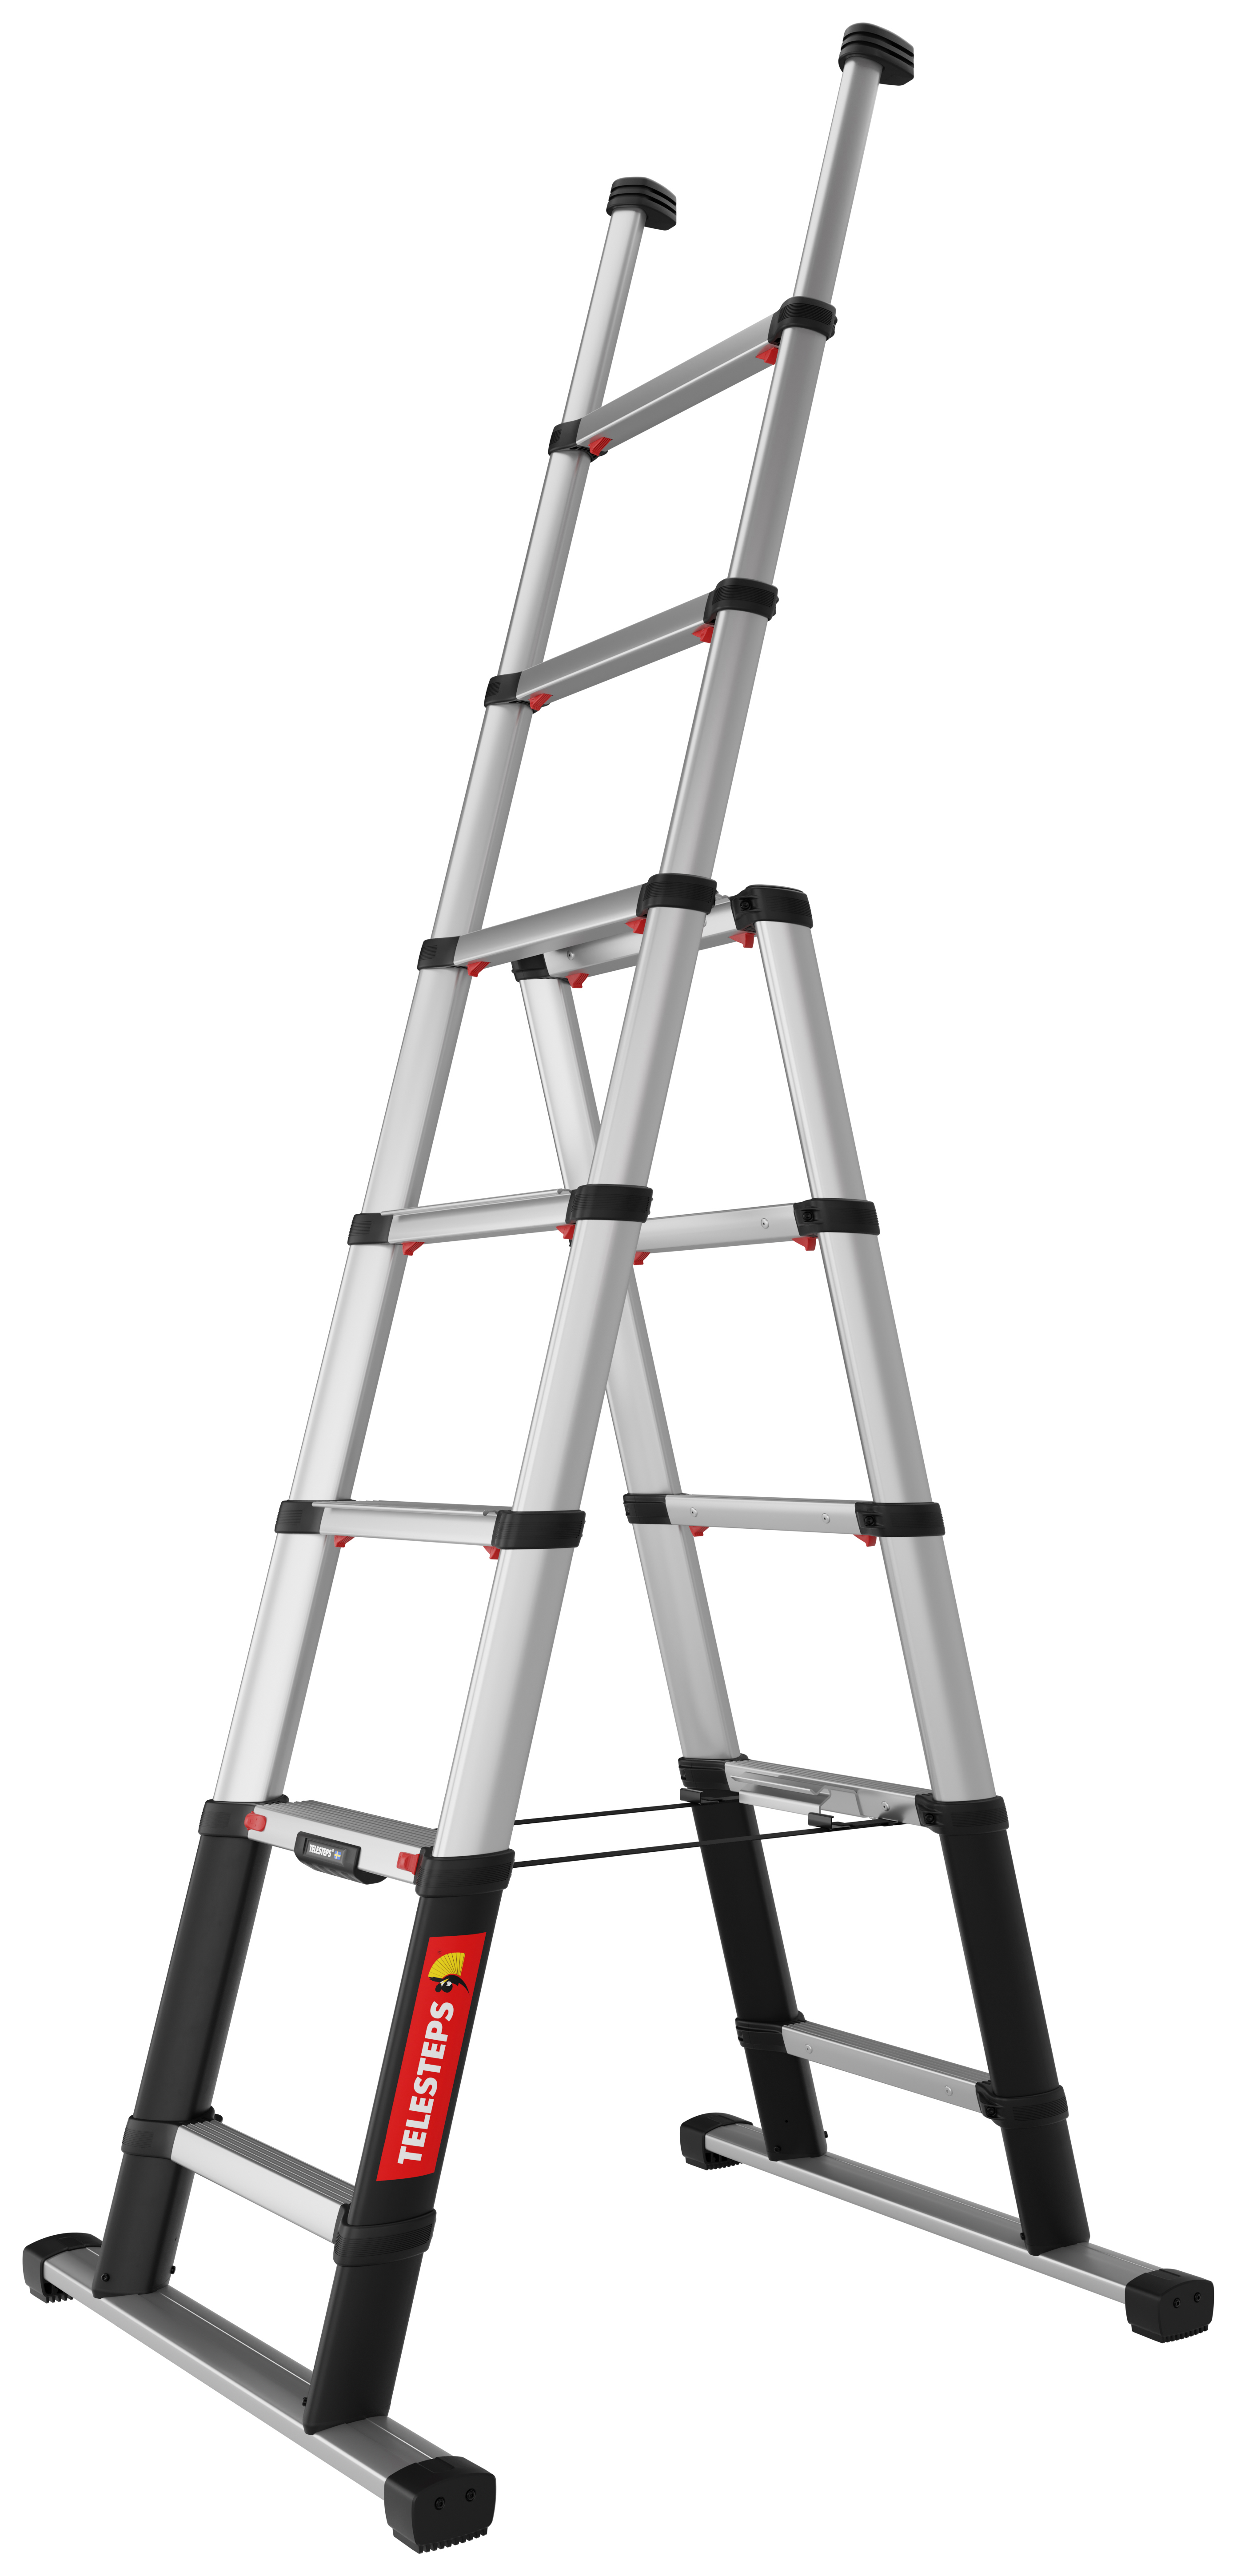 Telesteps 2.3m Aluminium Telescopic Combi Line Ladder - Max Height 3.1m